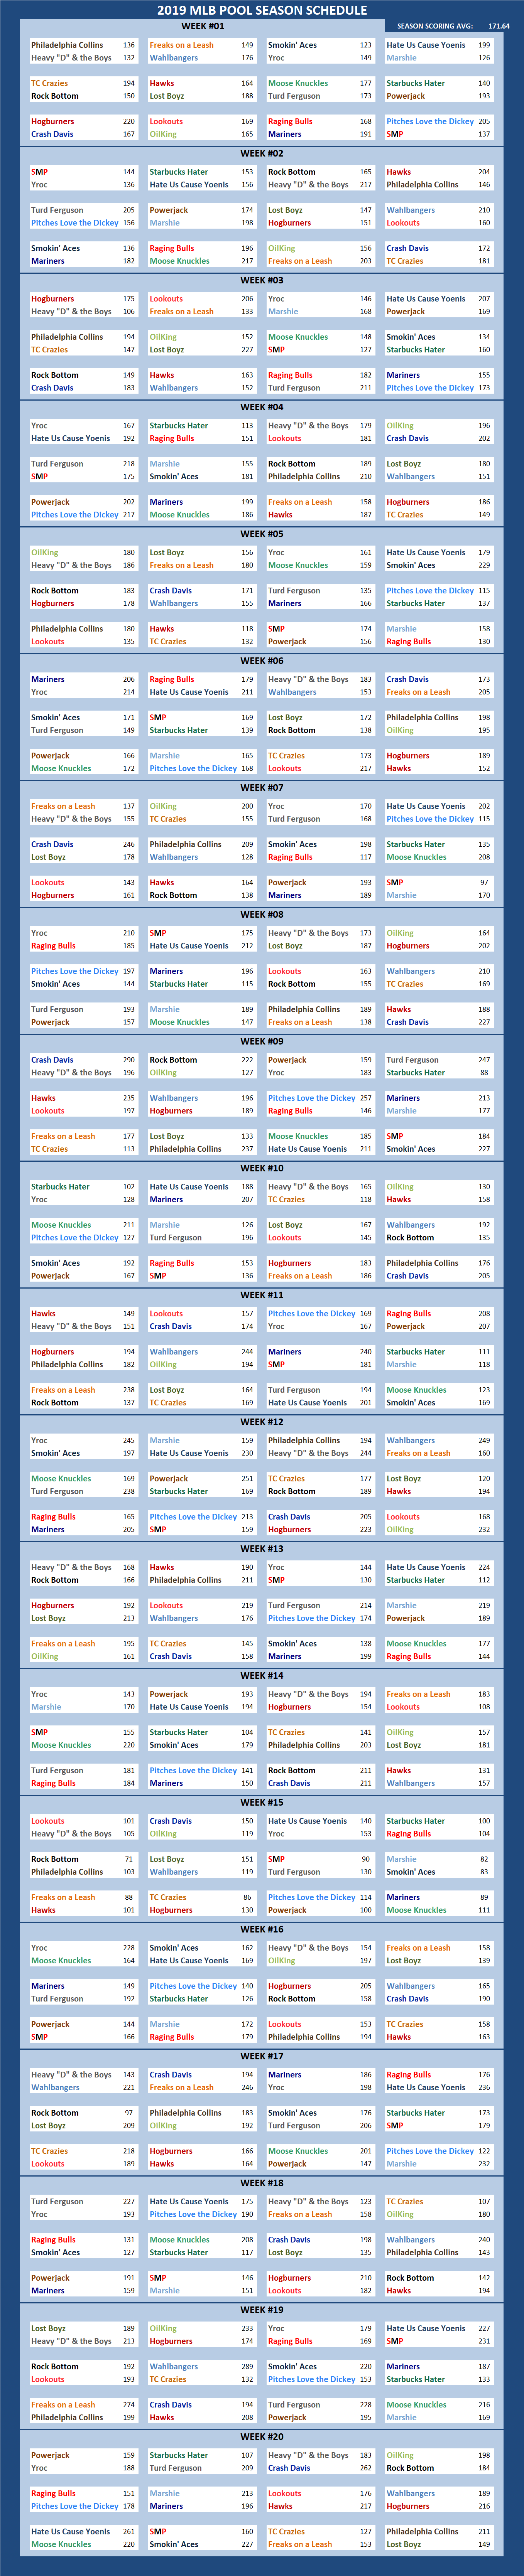 2019 Major League Baseball Pool Season Schedule